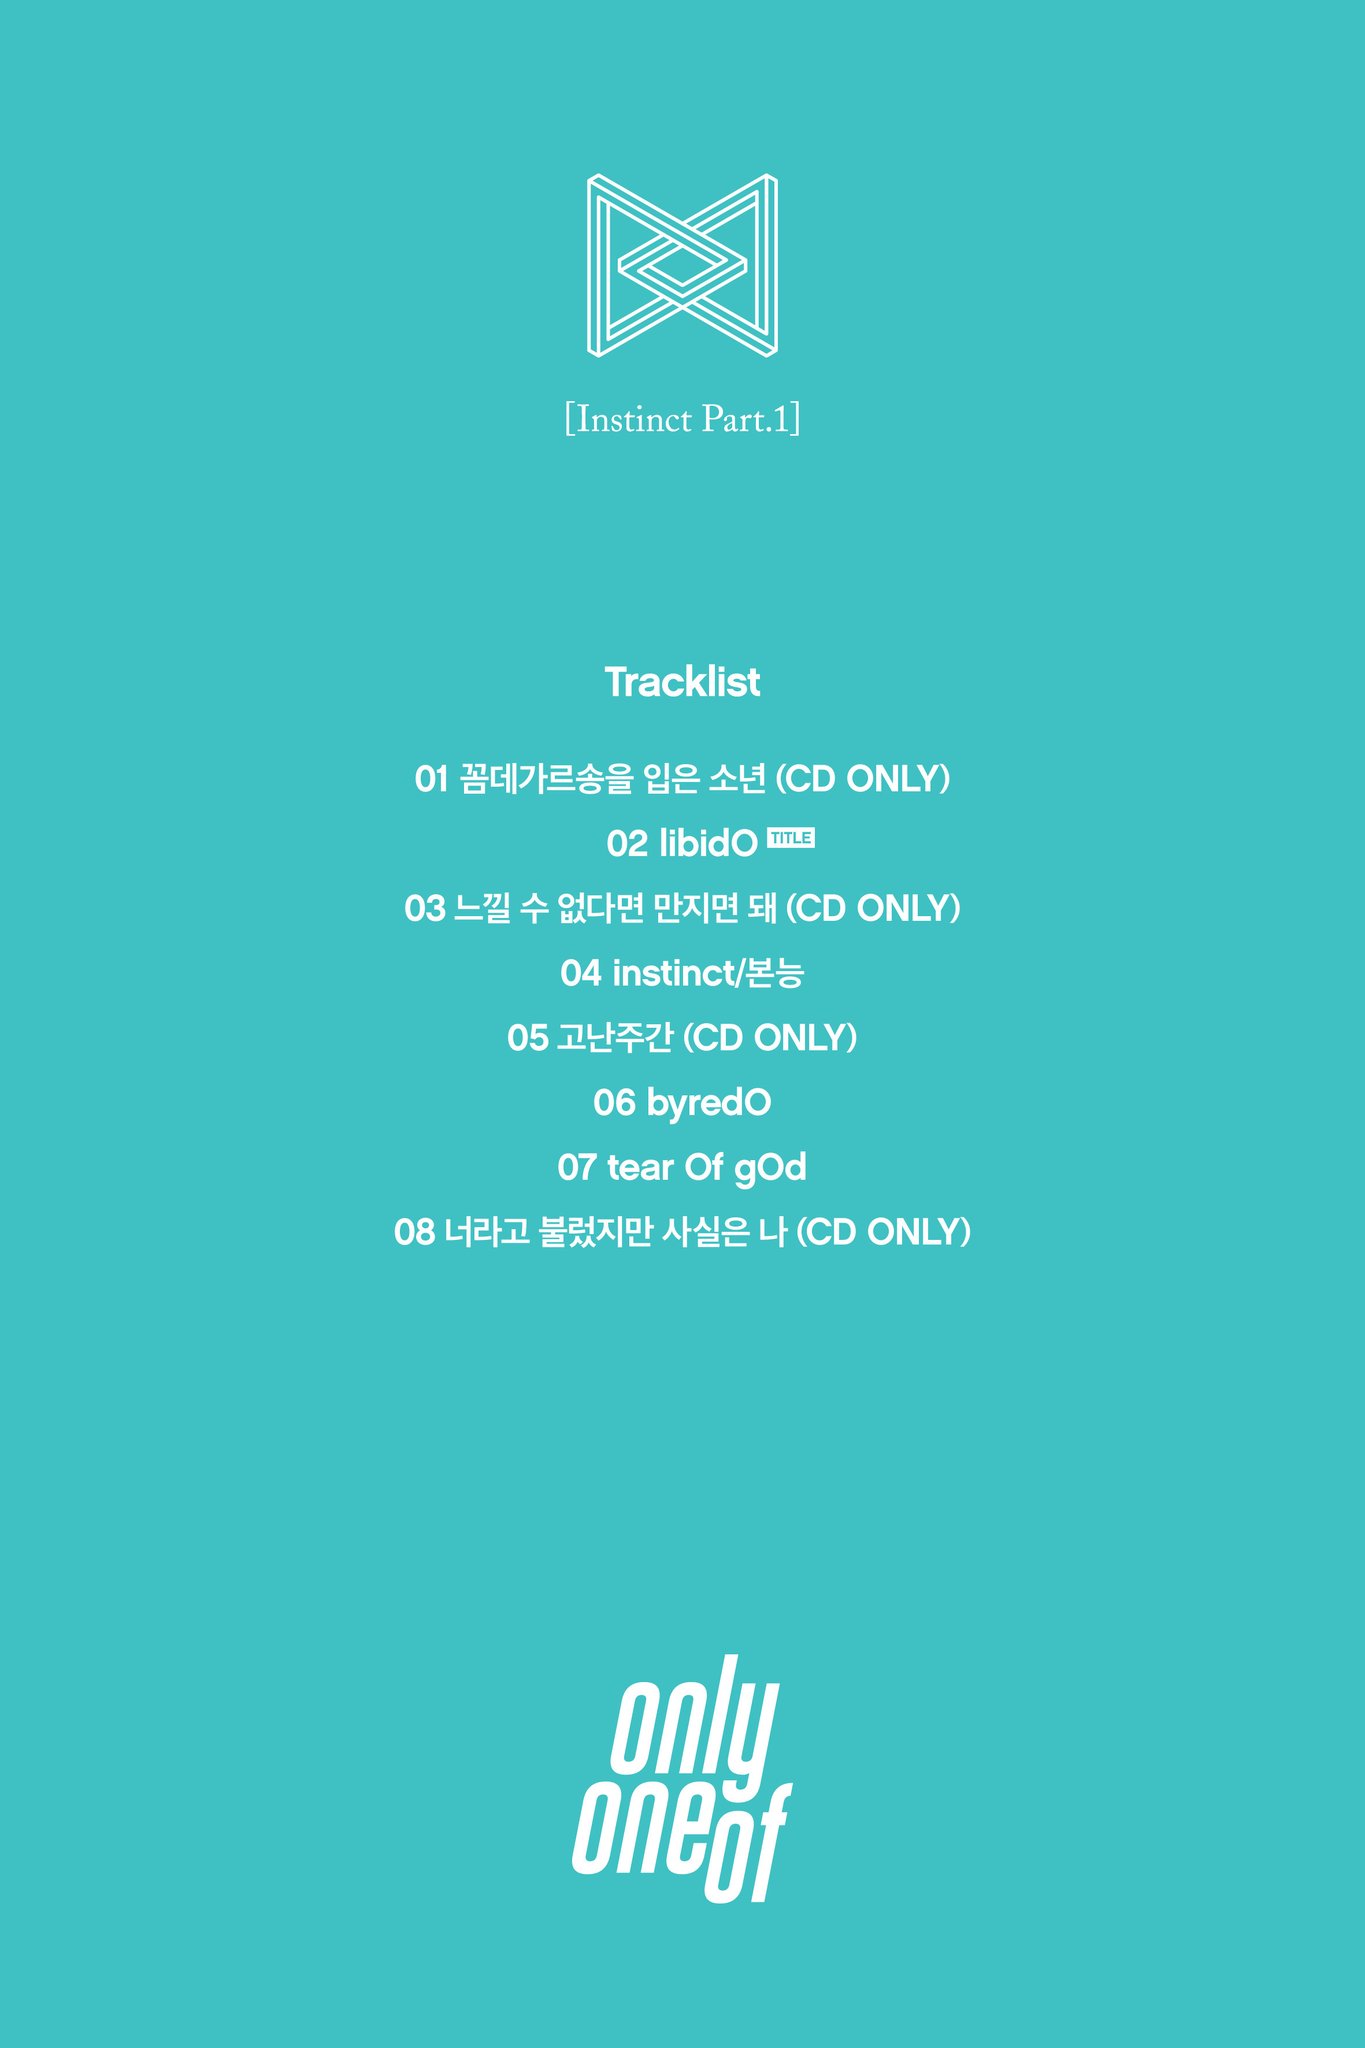 [정보/소식] OnlyOneOf (온리원오브) [InstinctPart.1] Tracklist (트랙리스트) | 인스티즈